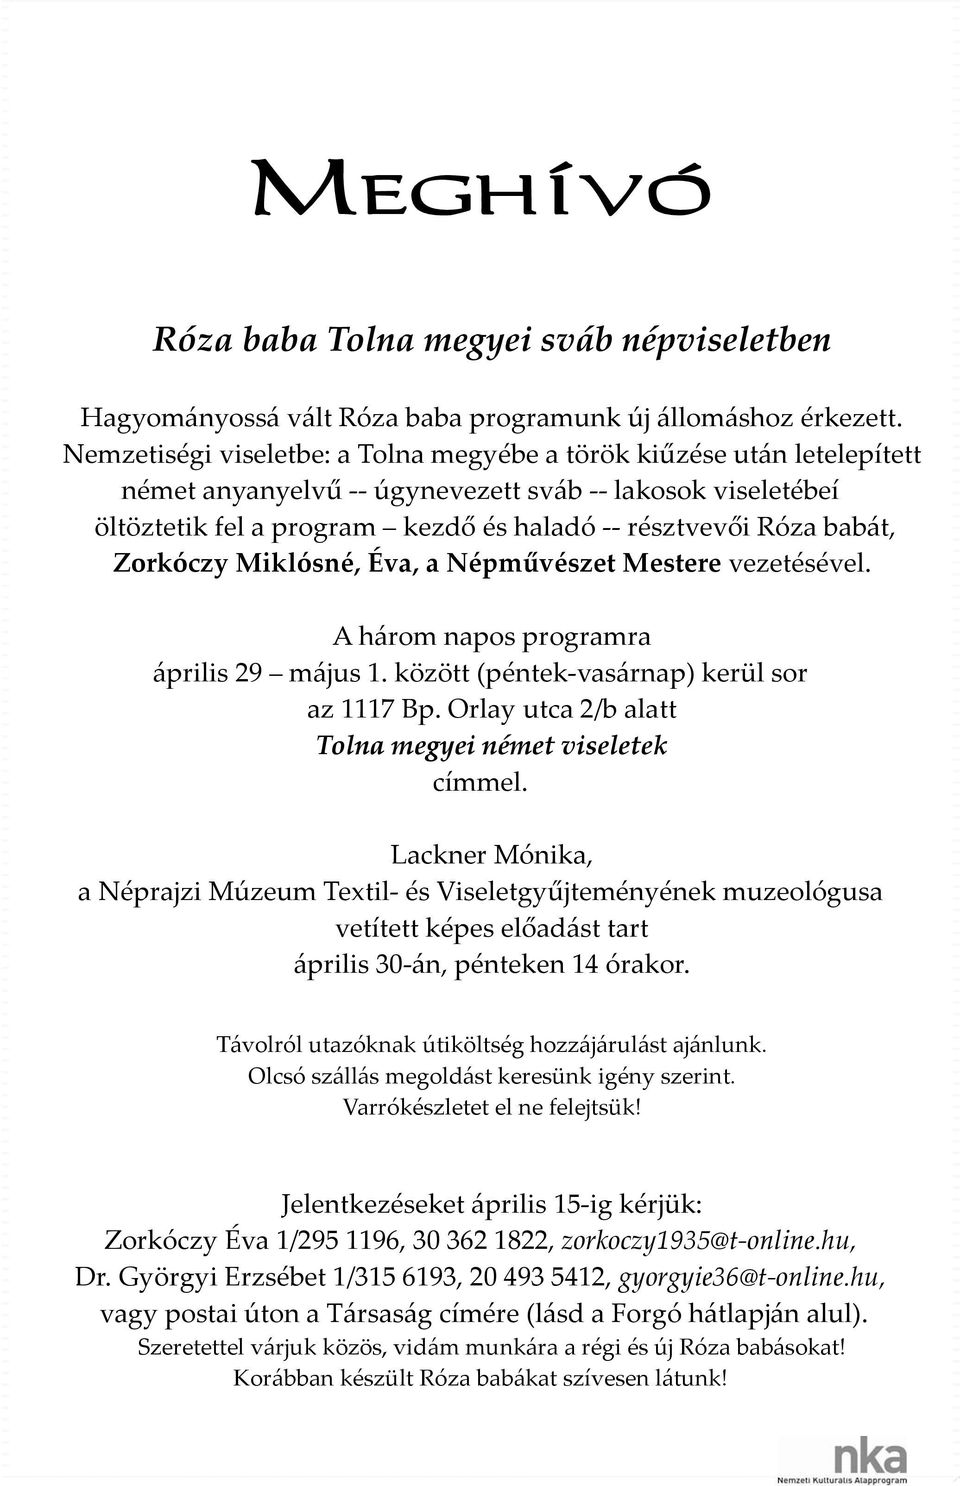 Miklósné, Éva, a Népművészet Mestere vezetésével. A három napos programra április 29 május 1. között (péntek vasárnap) kerül sor az 1117 Bp. Orlay utca 2/b alatt Tolna megyei német viseletek címmel.